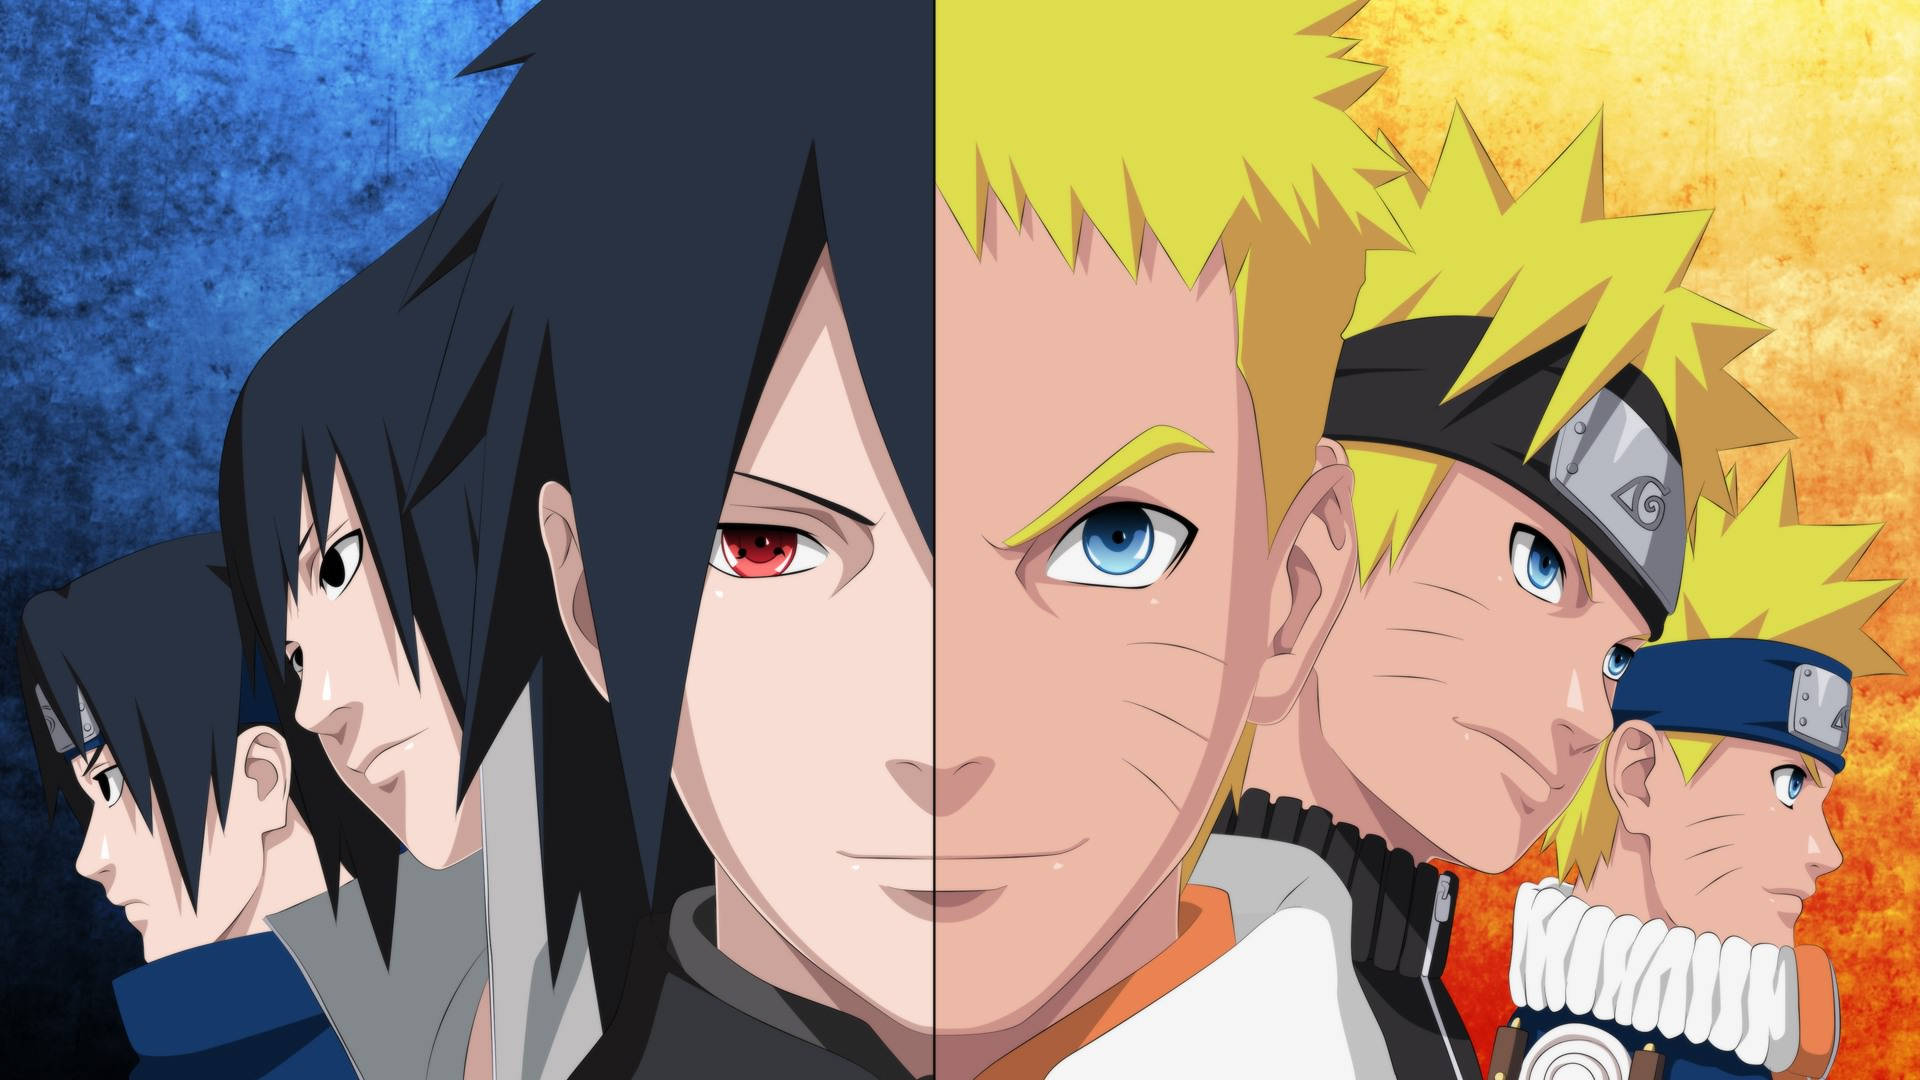 Free Naruto And Sasuke Wallpaper Downloads, [100+] Naruto And Sasuke  Wallpapers for FREE 